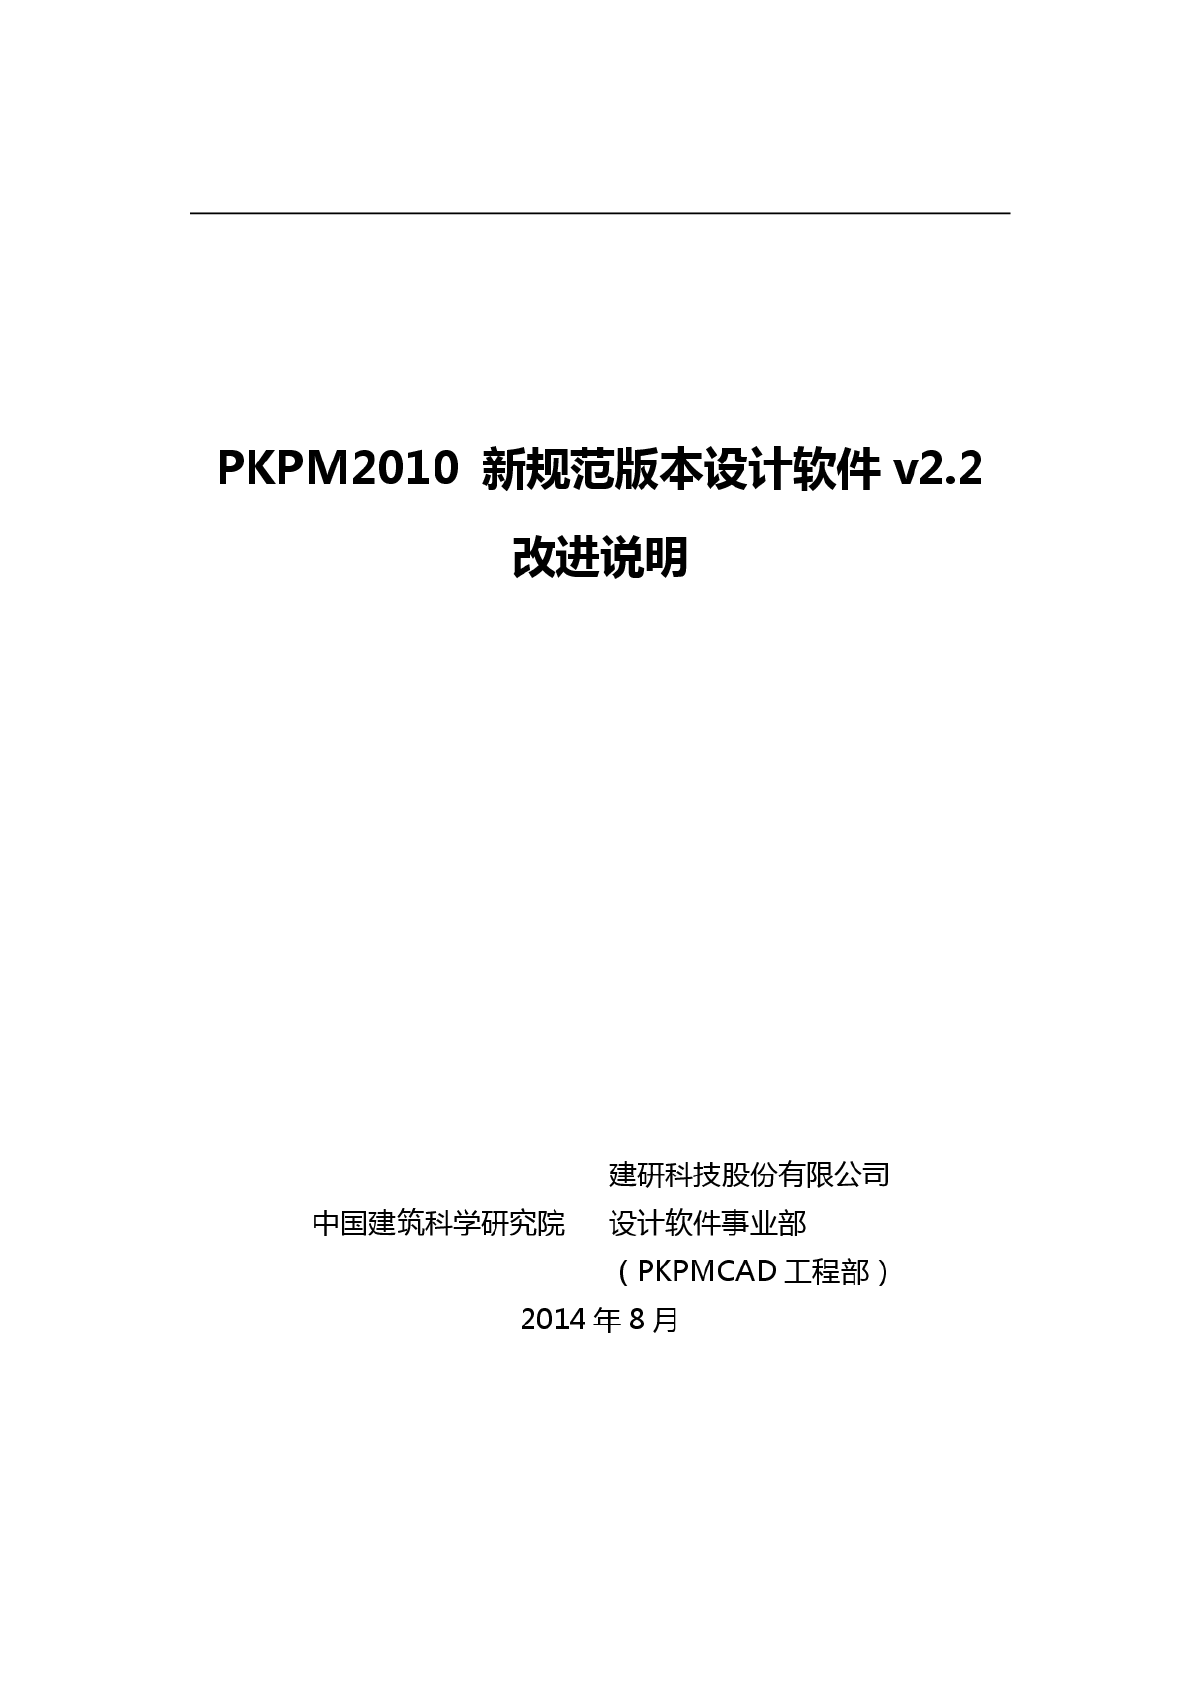 最新版PKPM2010 V2.2改进说明